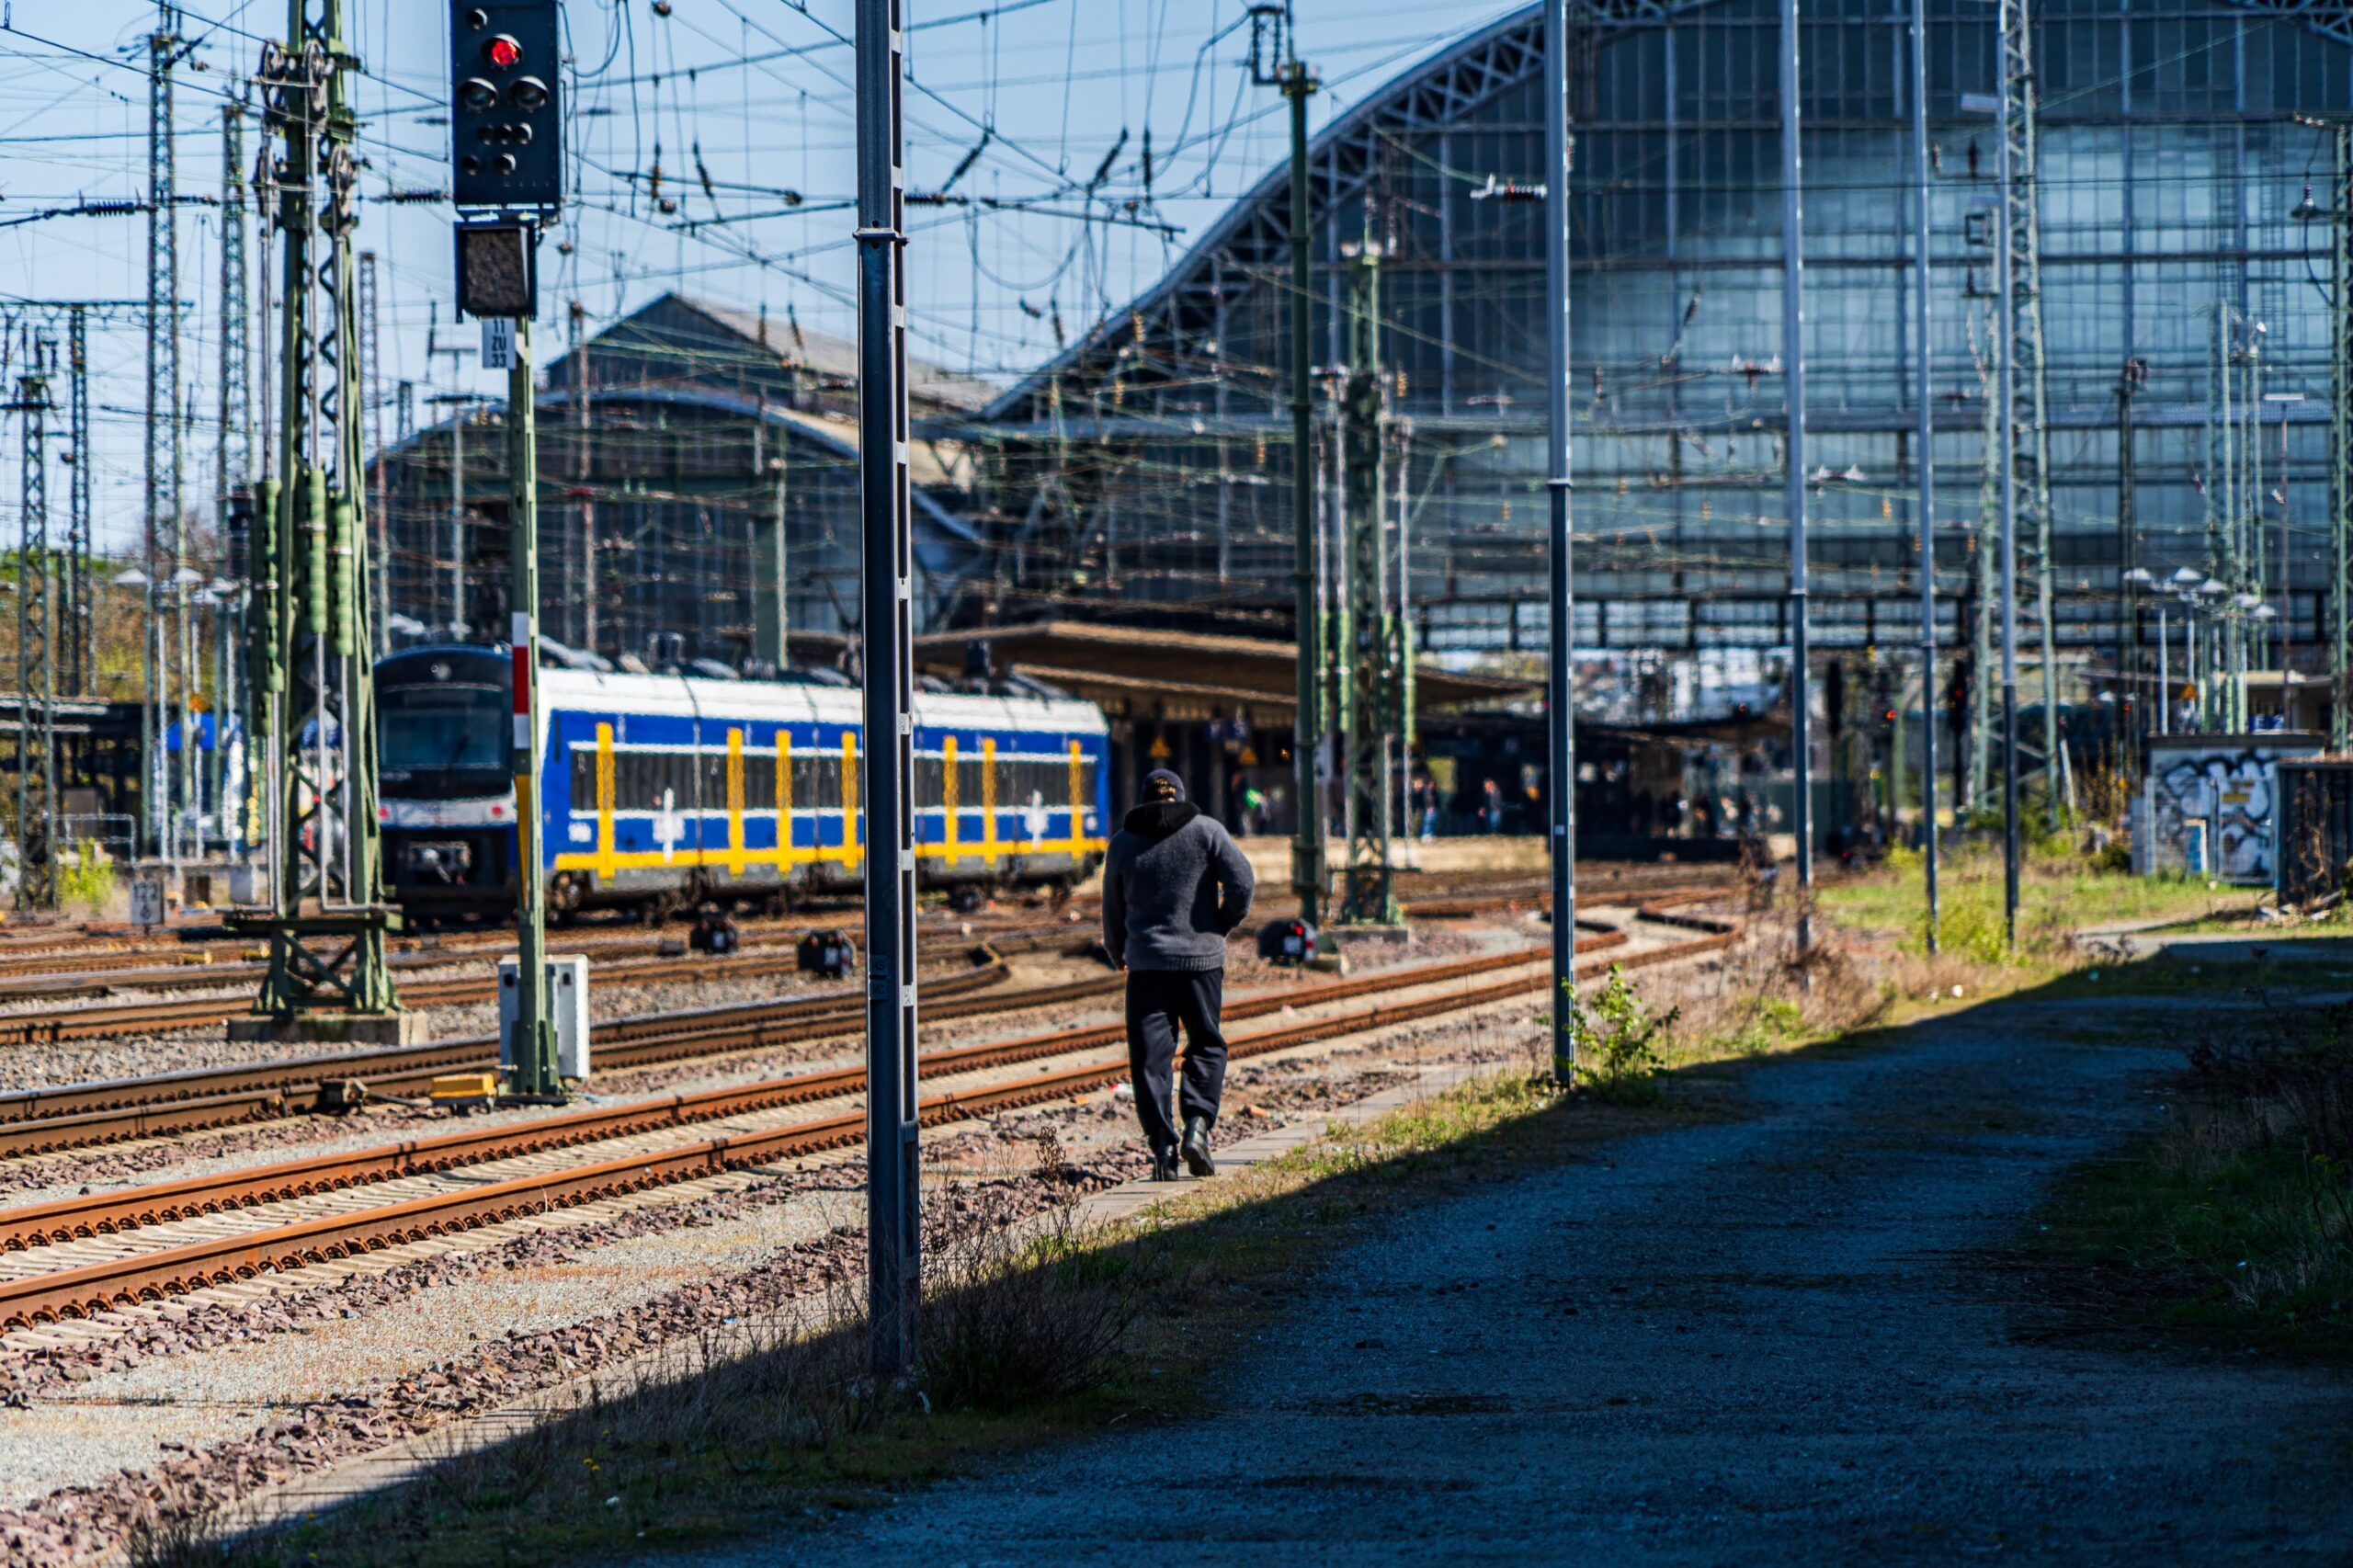 Bremer Bahnhof im äußeren Gleisbereich. Ein Mensch in grauen Klamotten geht an den Gleisen Richtung Bahnhof entlang.